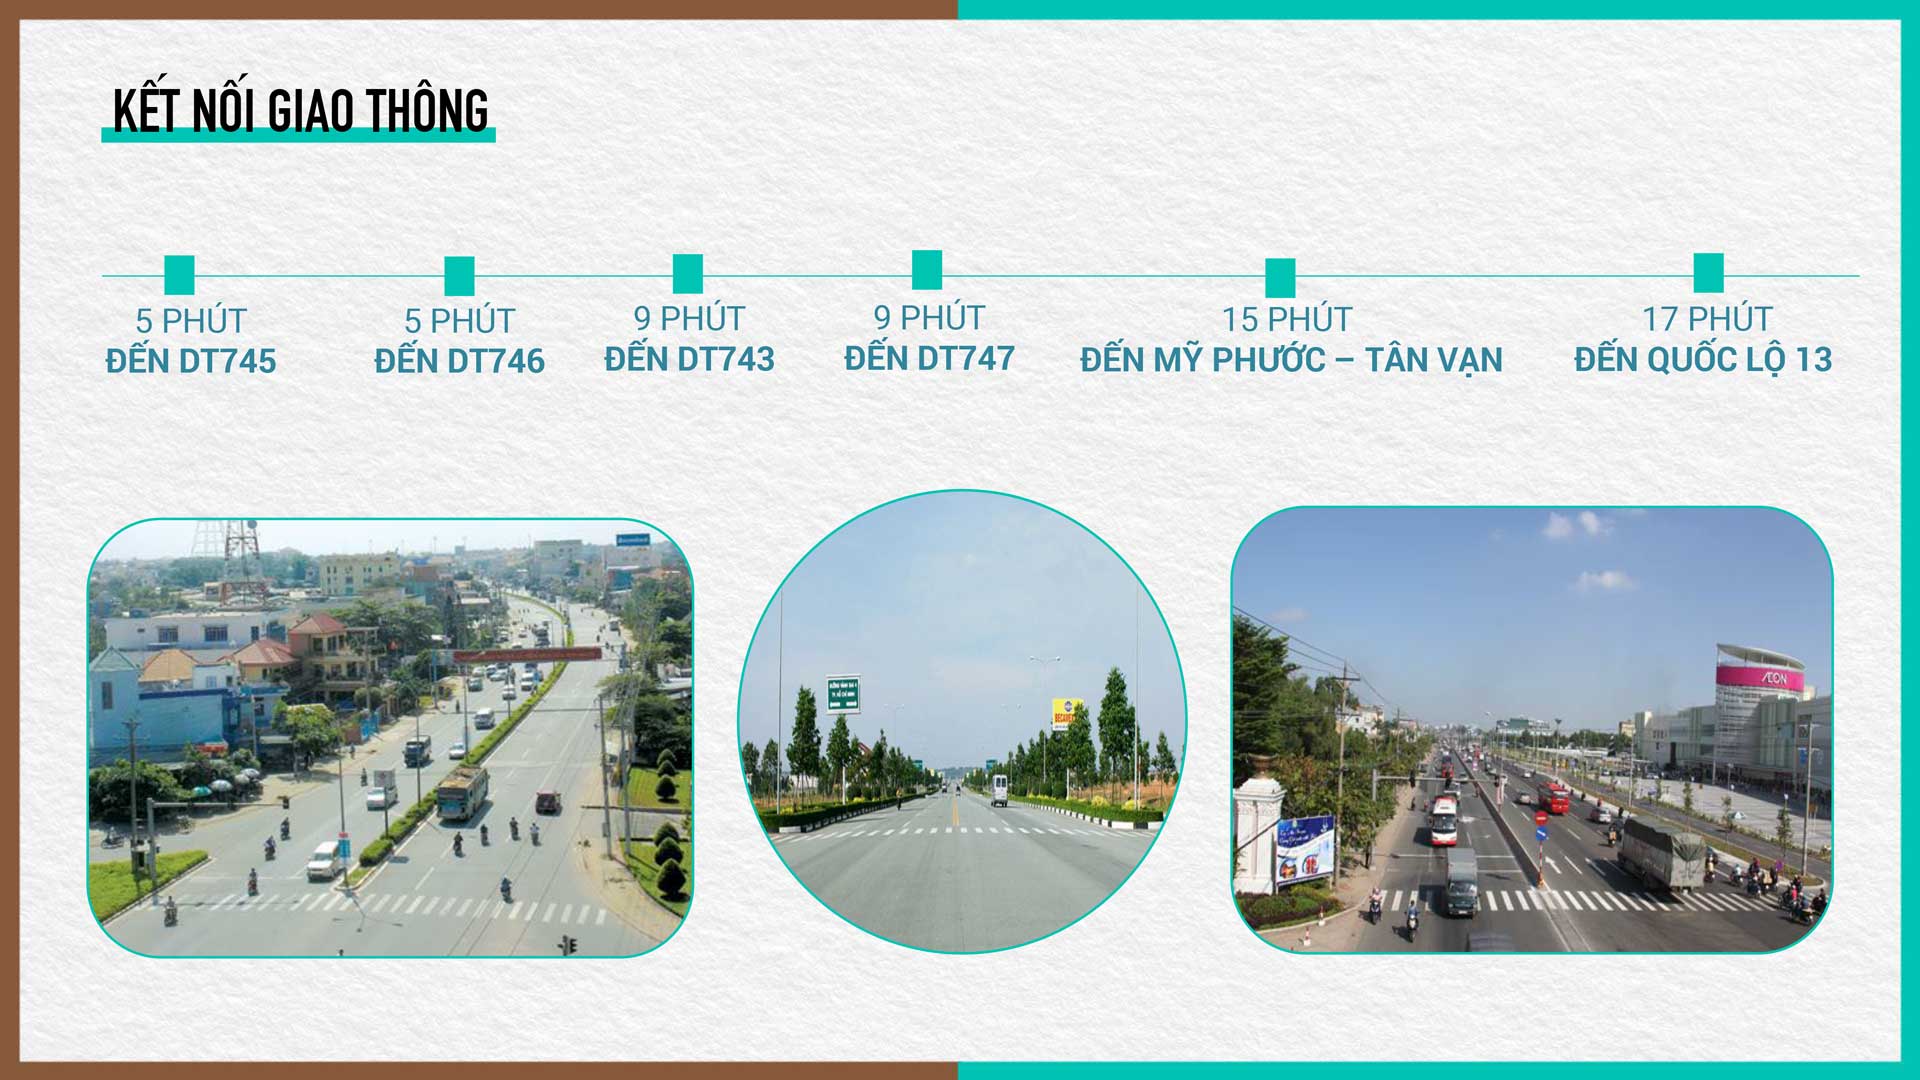 Kết nối giao thông thuận tiện và nhanh chóng từ vị trí dự án Tân Phước Khánh đến các tuyến đường huyết mạch